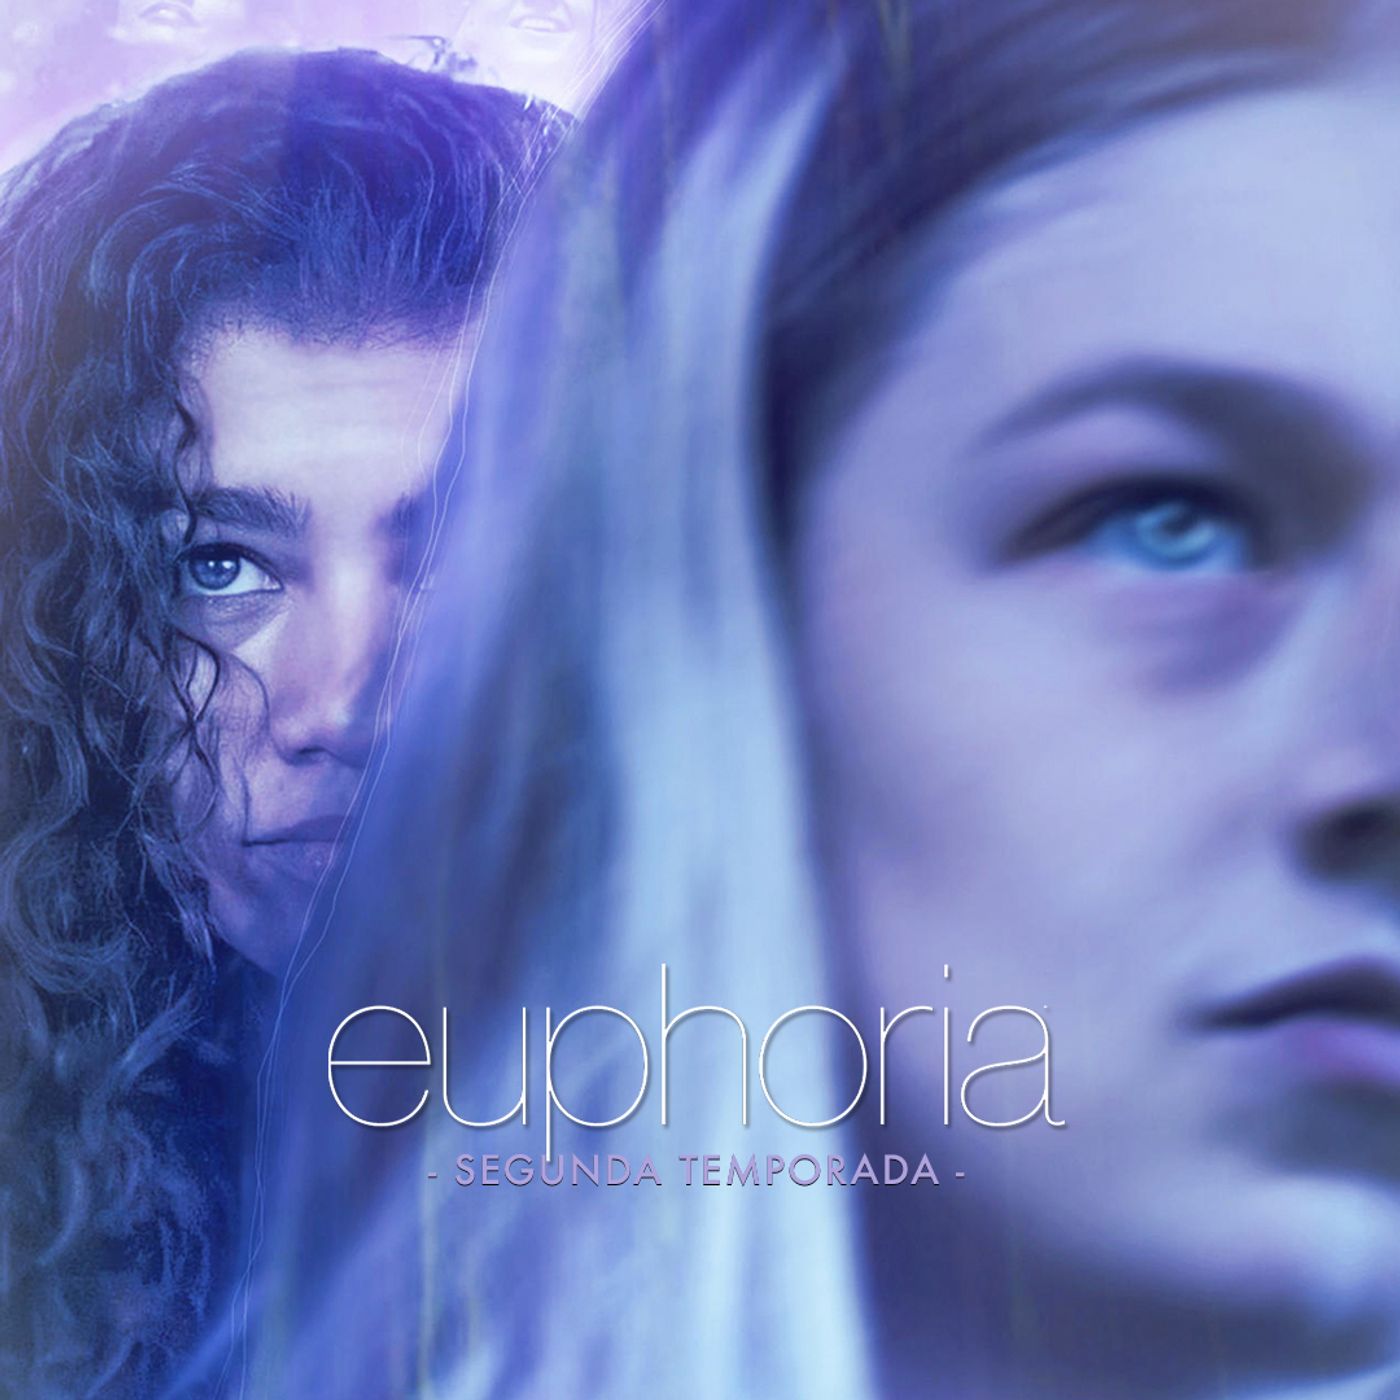 290: "Euphoria - Temporada 02"